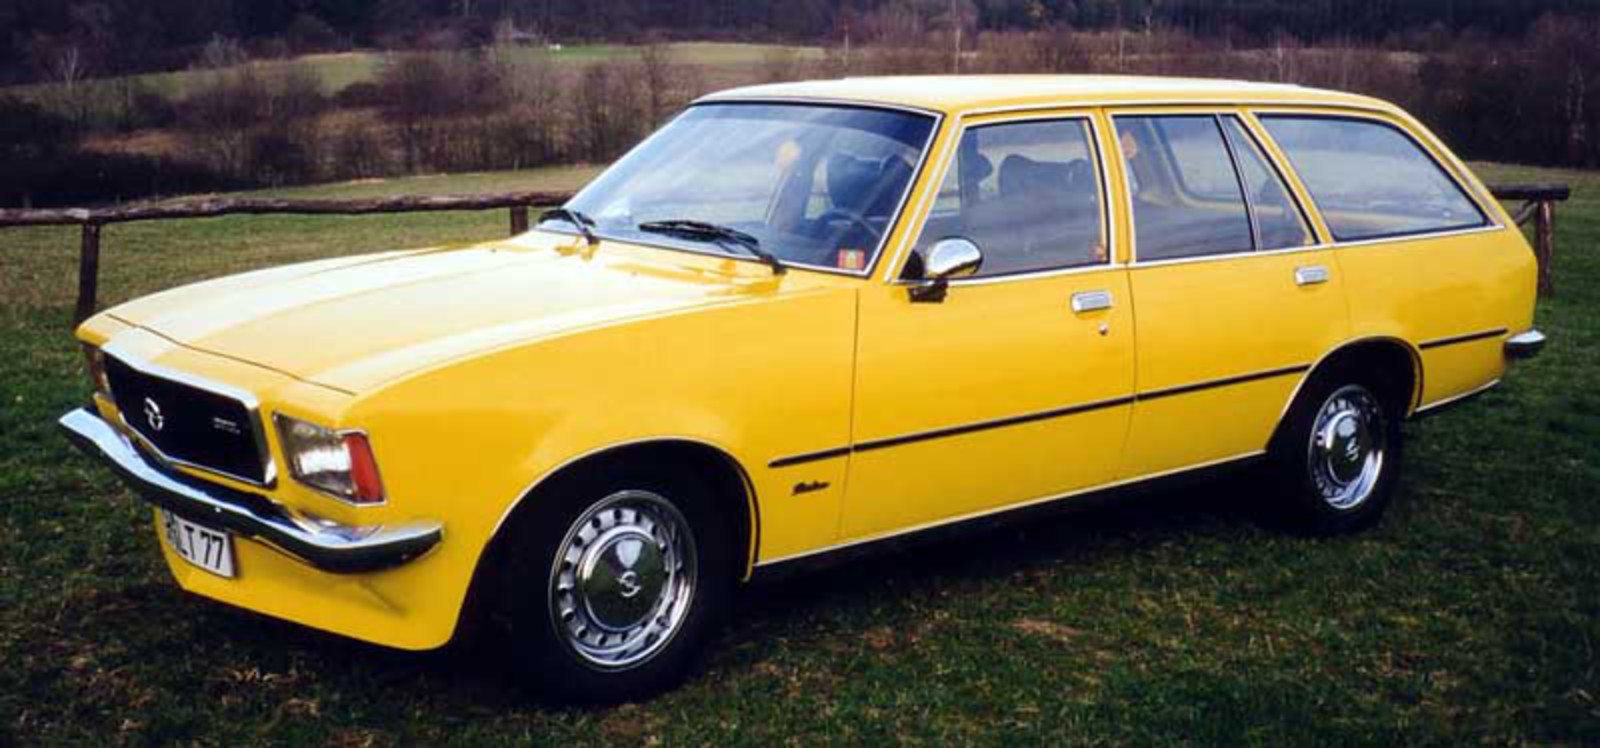 Caravane Opel Rekord. Voir Télécharger le fond d'écran. 800x374. Commentaire